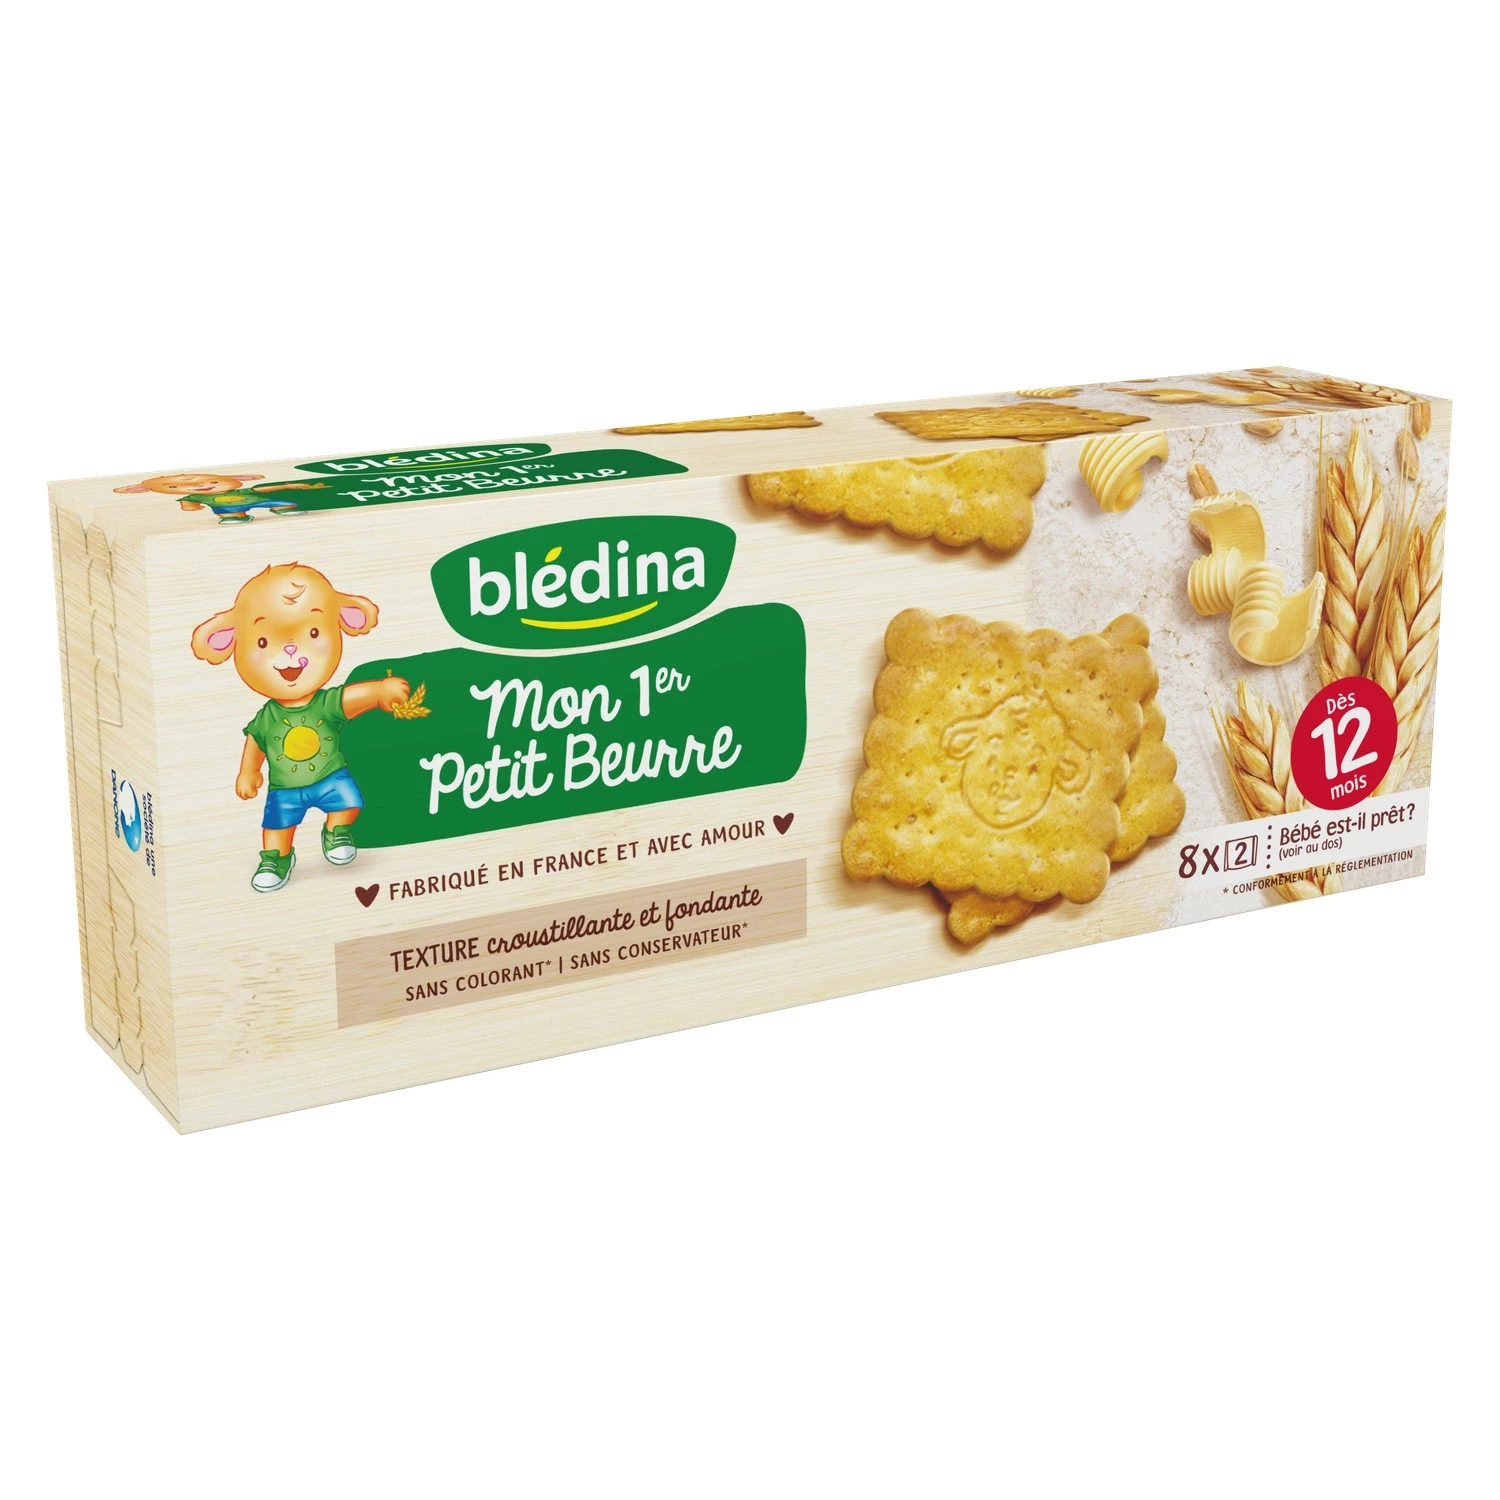 小黄油婴儿饼干 12 个月起 133g - BLEDINA